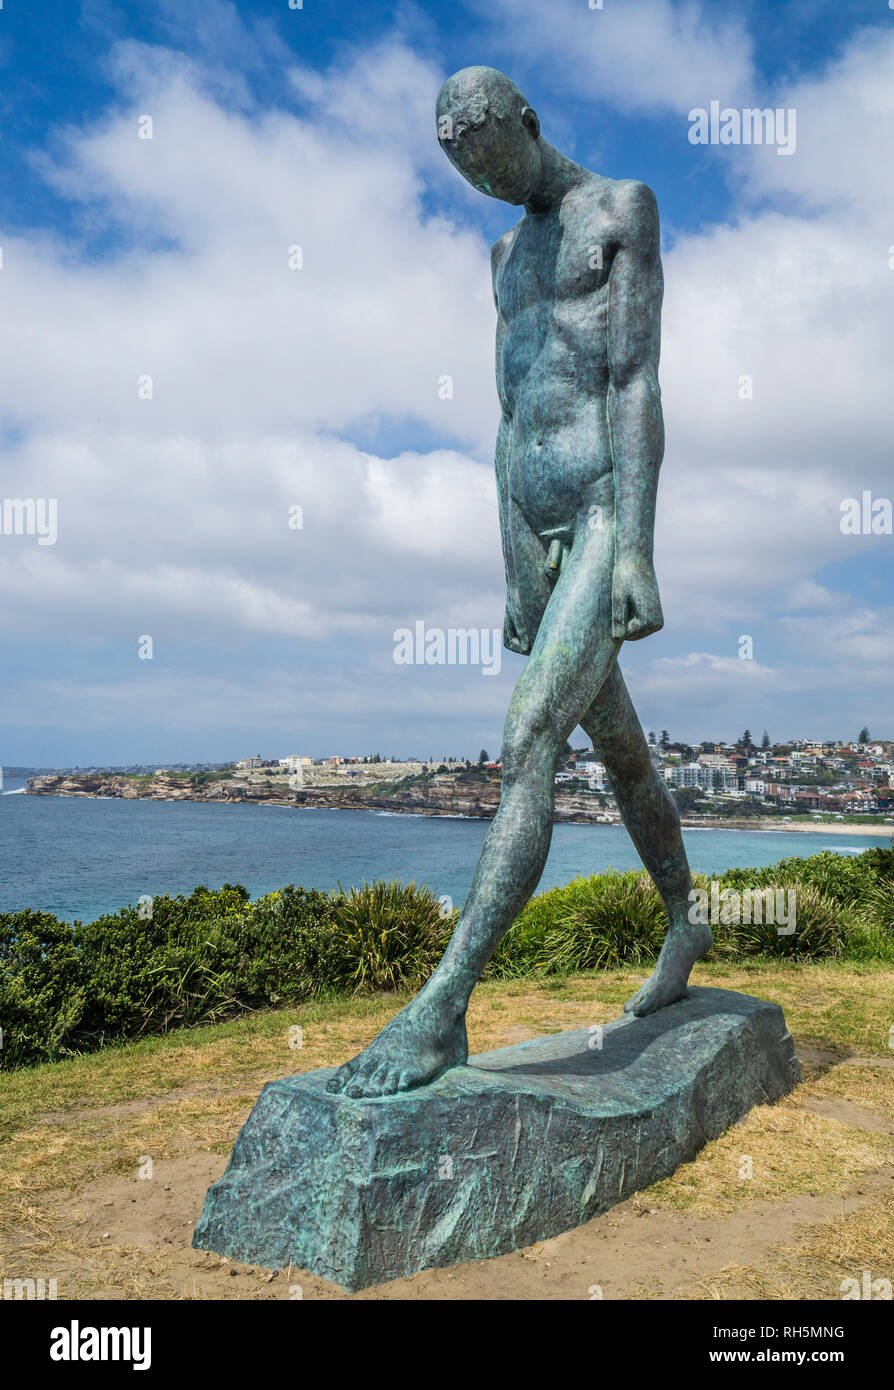 Scultura Di Mare 2018, esposizione annuale sulla passeggiata costiera tra Bondi e Tamarama Beach, Sydney, Nuovo Galles del Sud, Australia. Sculptur in bronzo Foto Stock